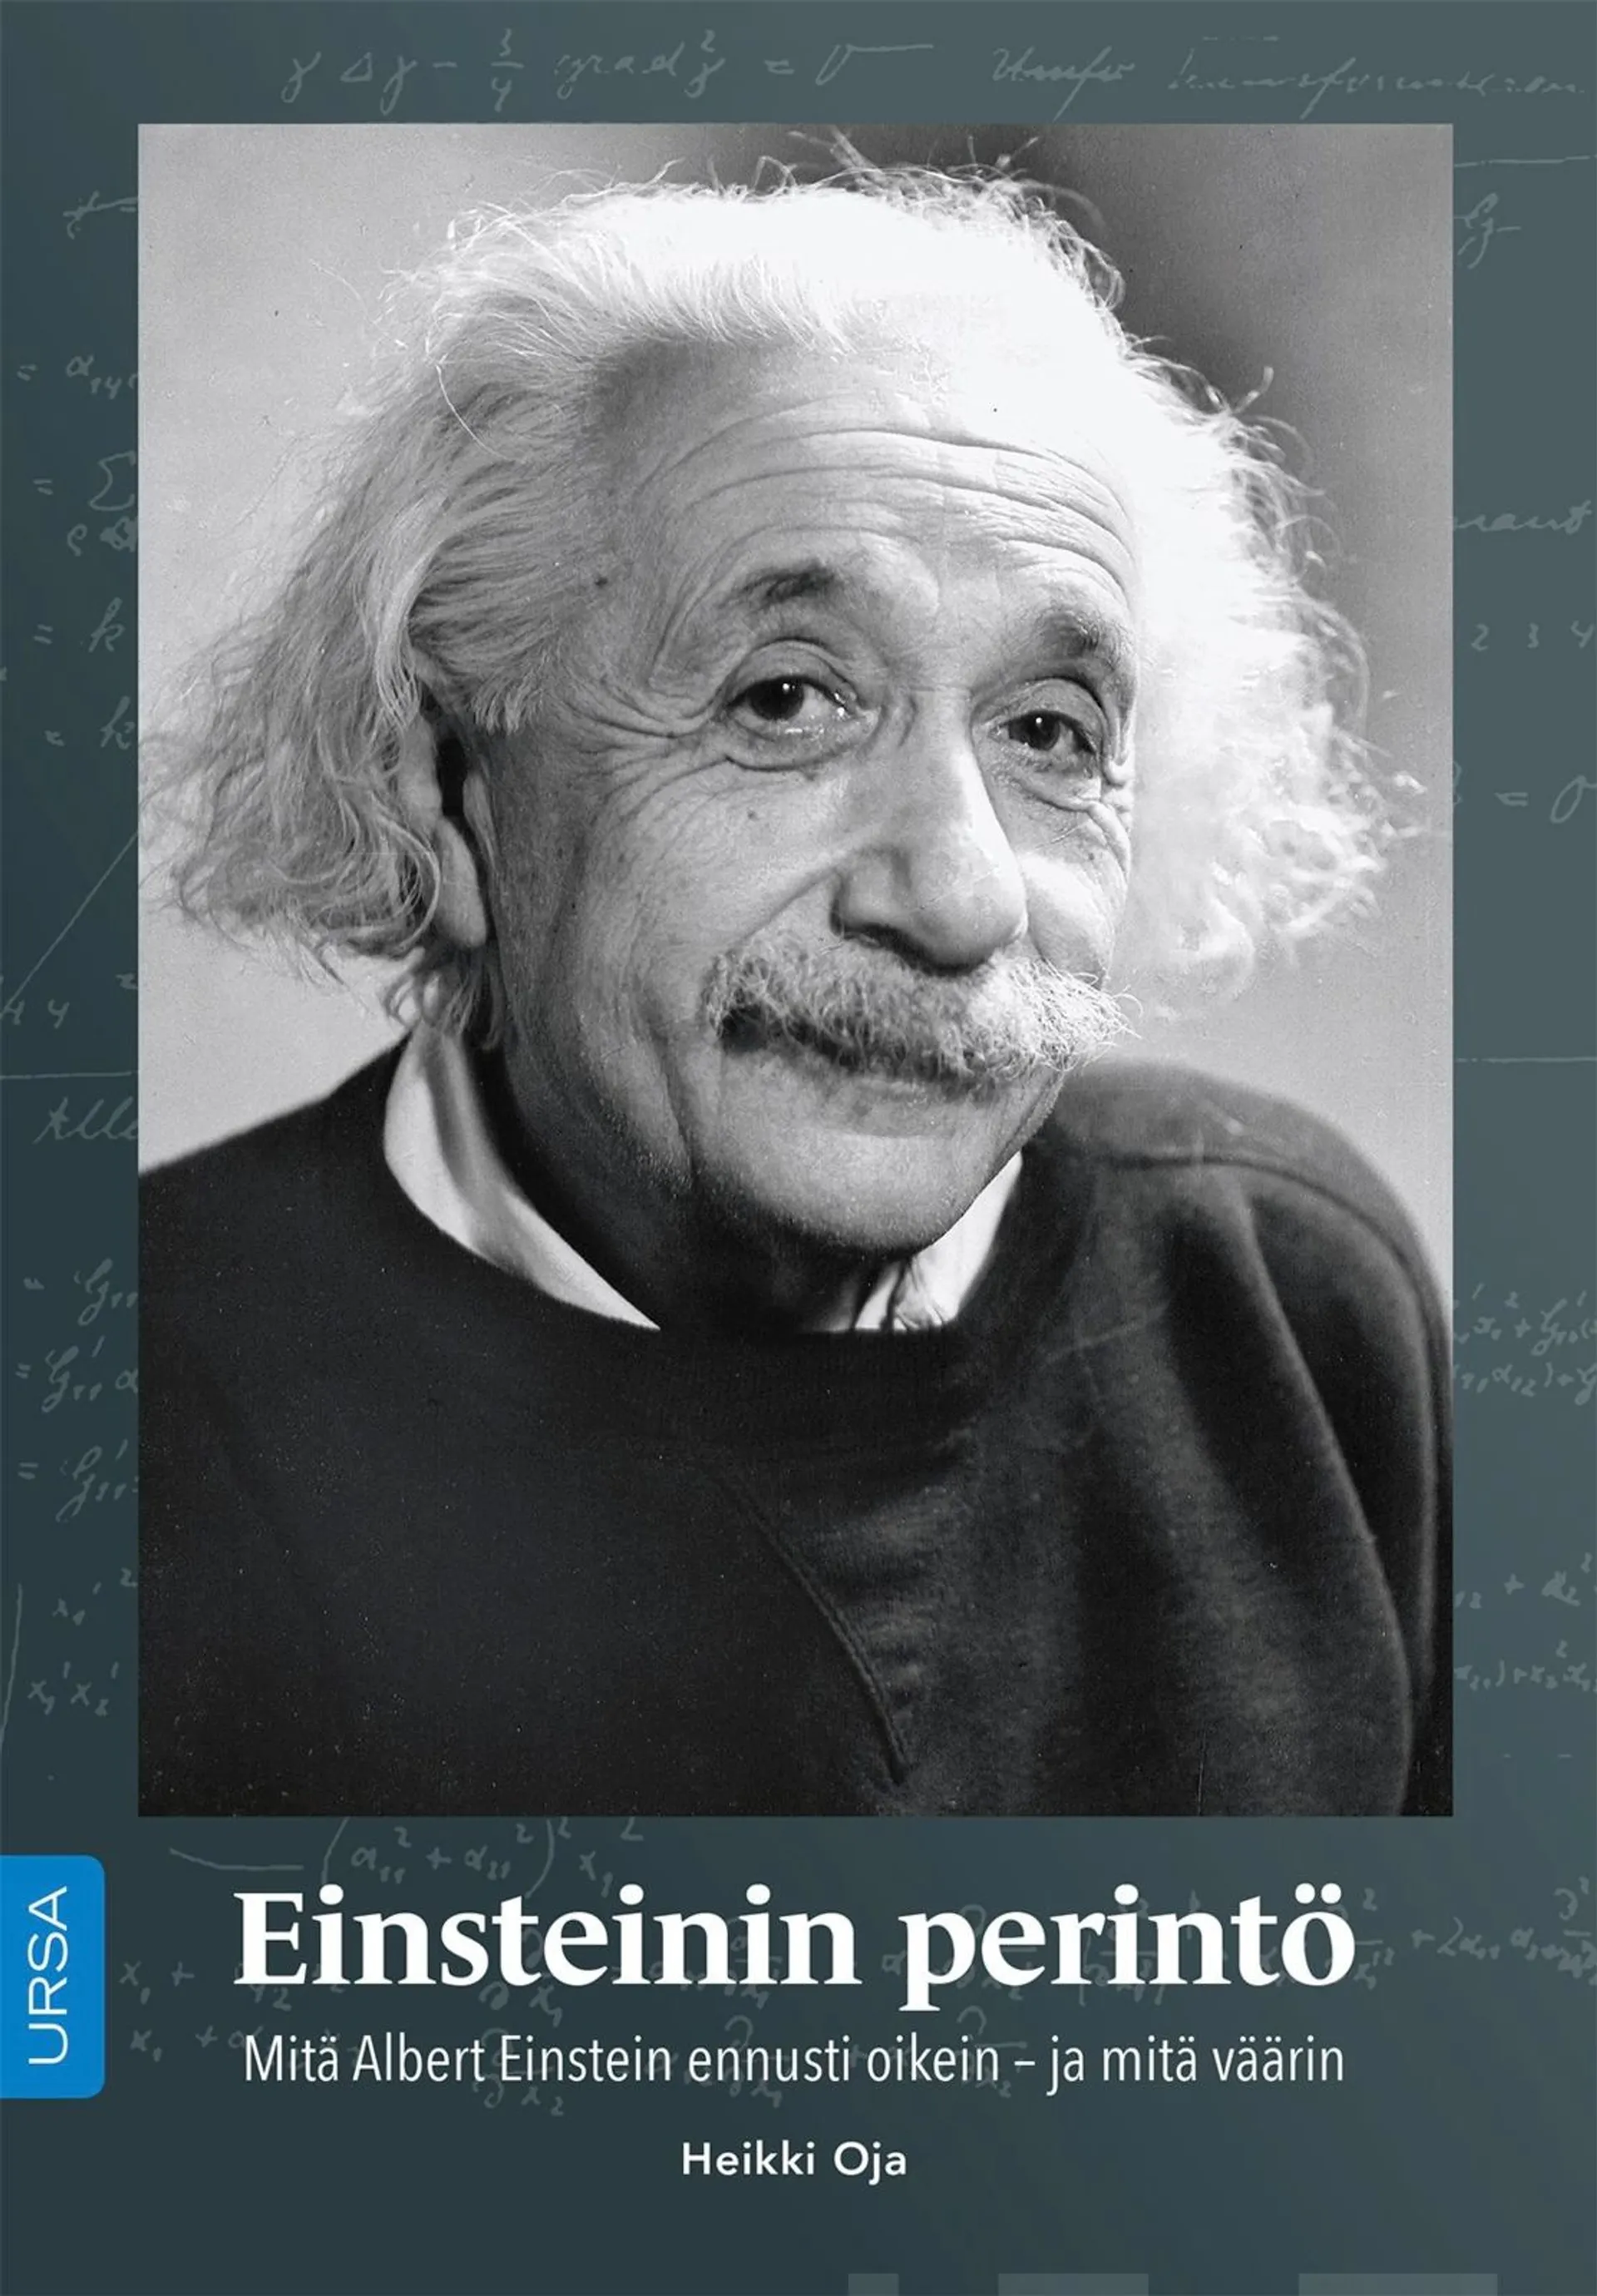 Oja, Einsteinin perintö